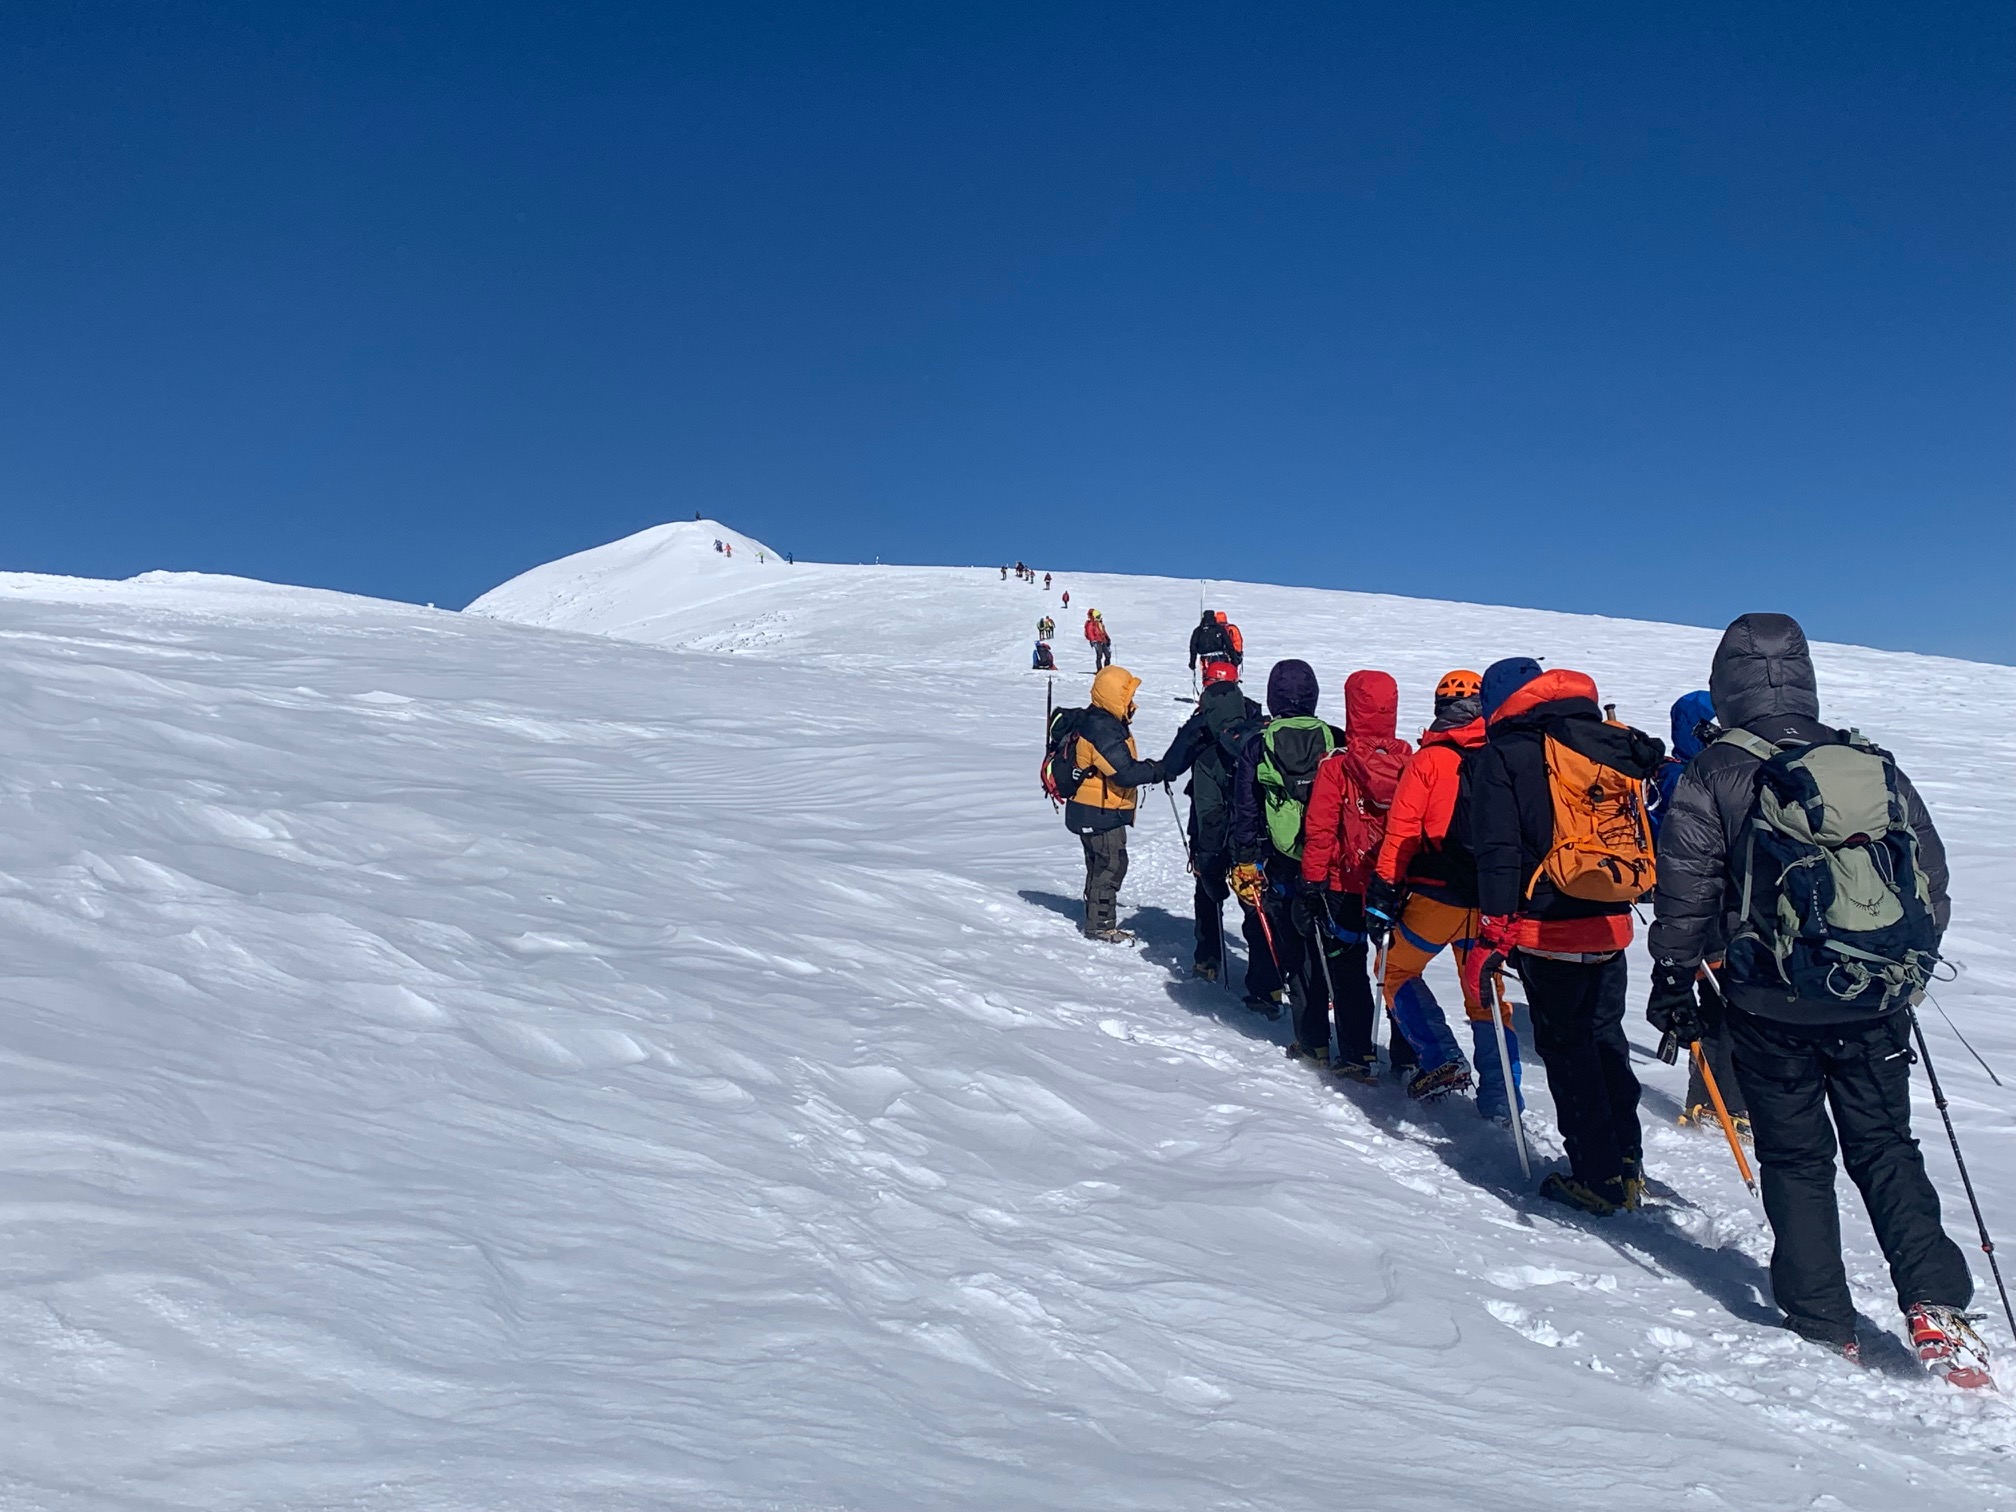 The summit of Mount Elbrus